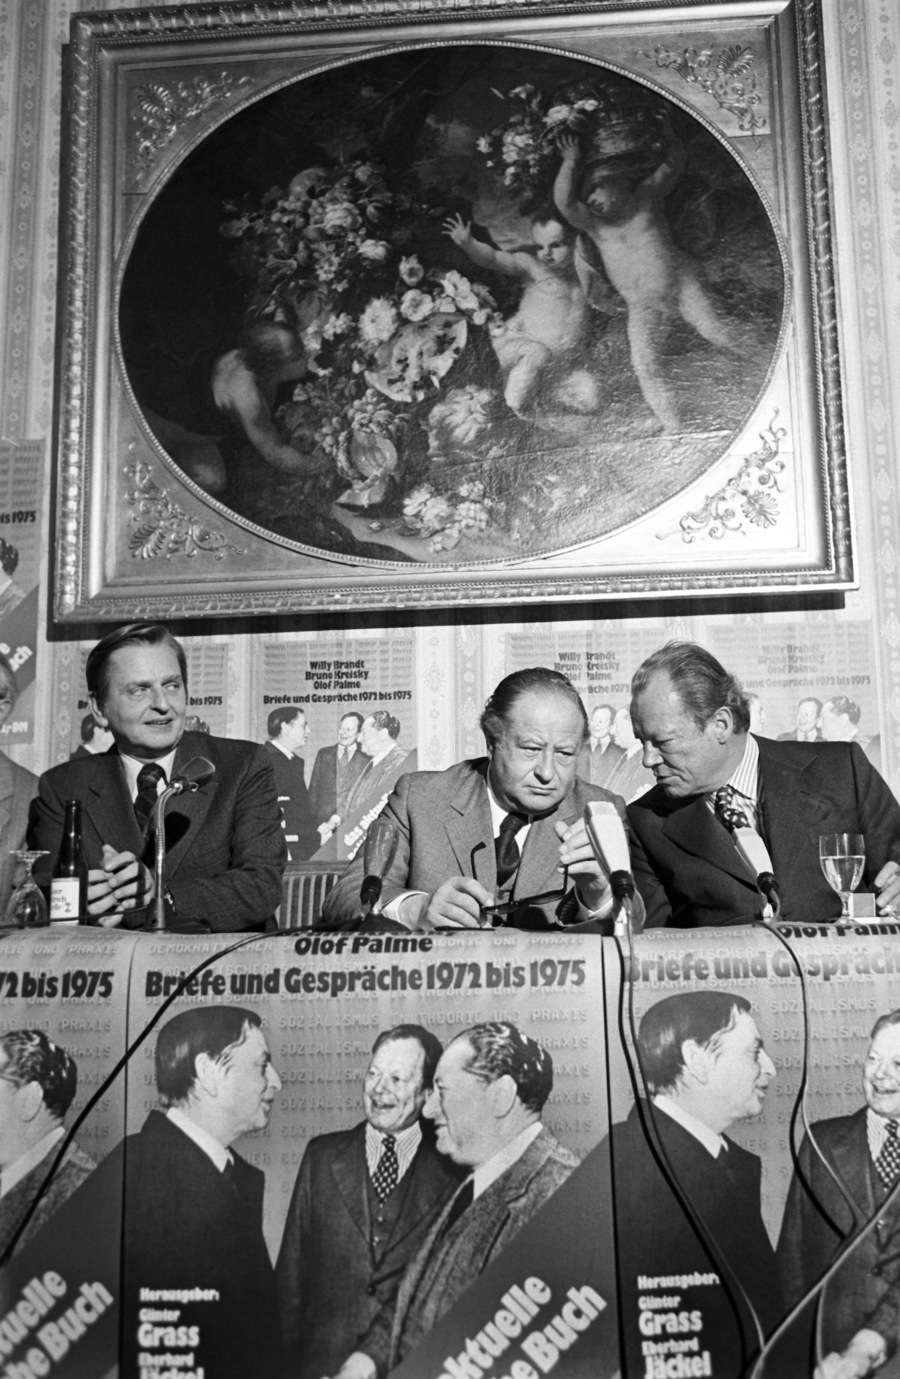 Im Rahmen der Frankfurter Buchmesse die drei führenden europäischen Sozialdemokraten (von links nach rechts): Olof Palme (schwedischer Premierminister), Bruno Kreisky (österreichischer Bundeskanzler) und Willy Brandt (Vorsitzender der Sozialdemokratischen Partei und ehemaliger Bundeskanzler) am 9. Oktober 1972 während einer Pressekonferenz |  © Image Alliance / Heinz Wieseler